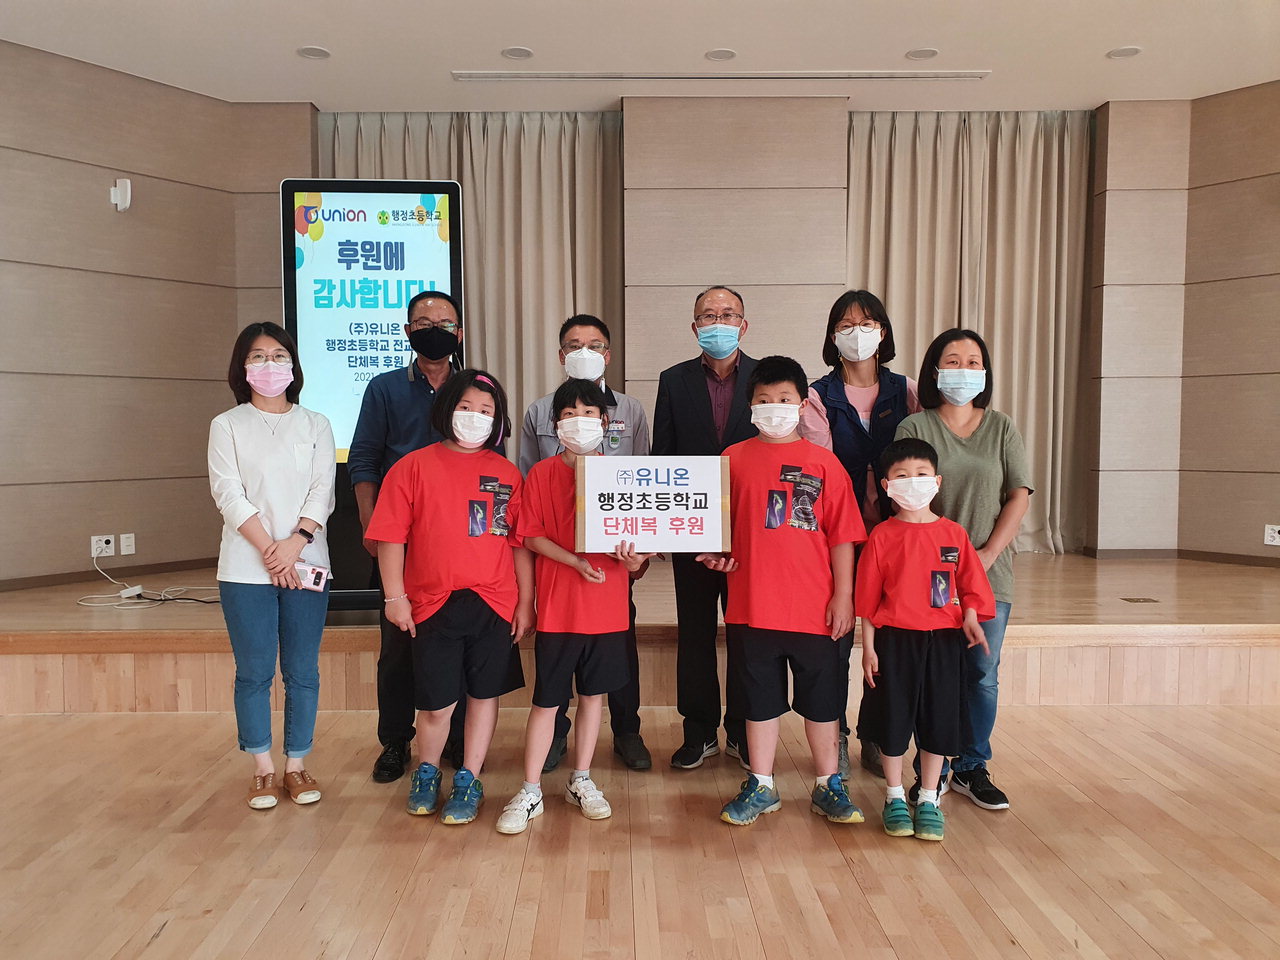 ㈜유니온 청주공장은 가덕면 행정초등학교 학생 40명에게 200만원 상당의 단체복을 후원했다.